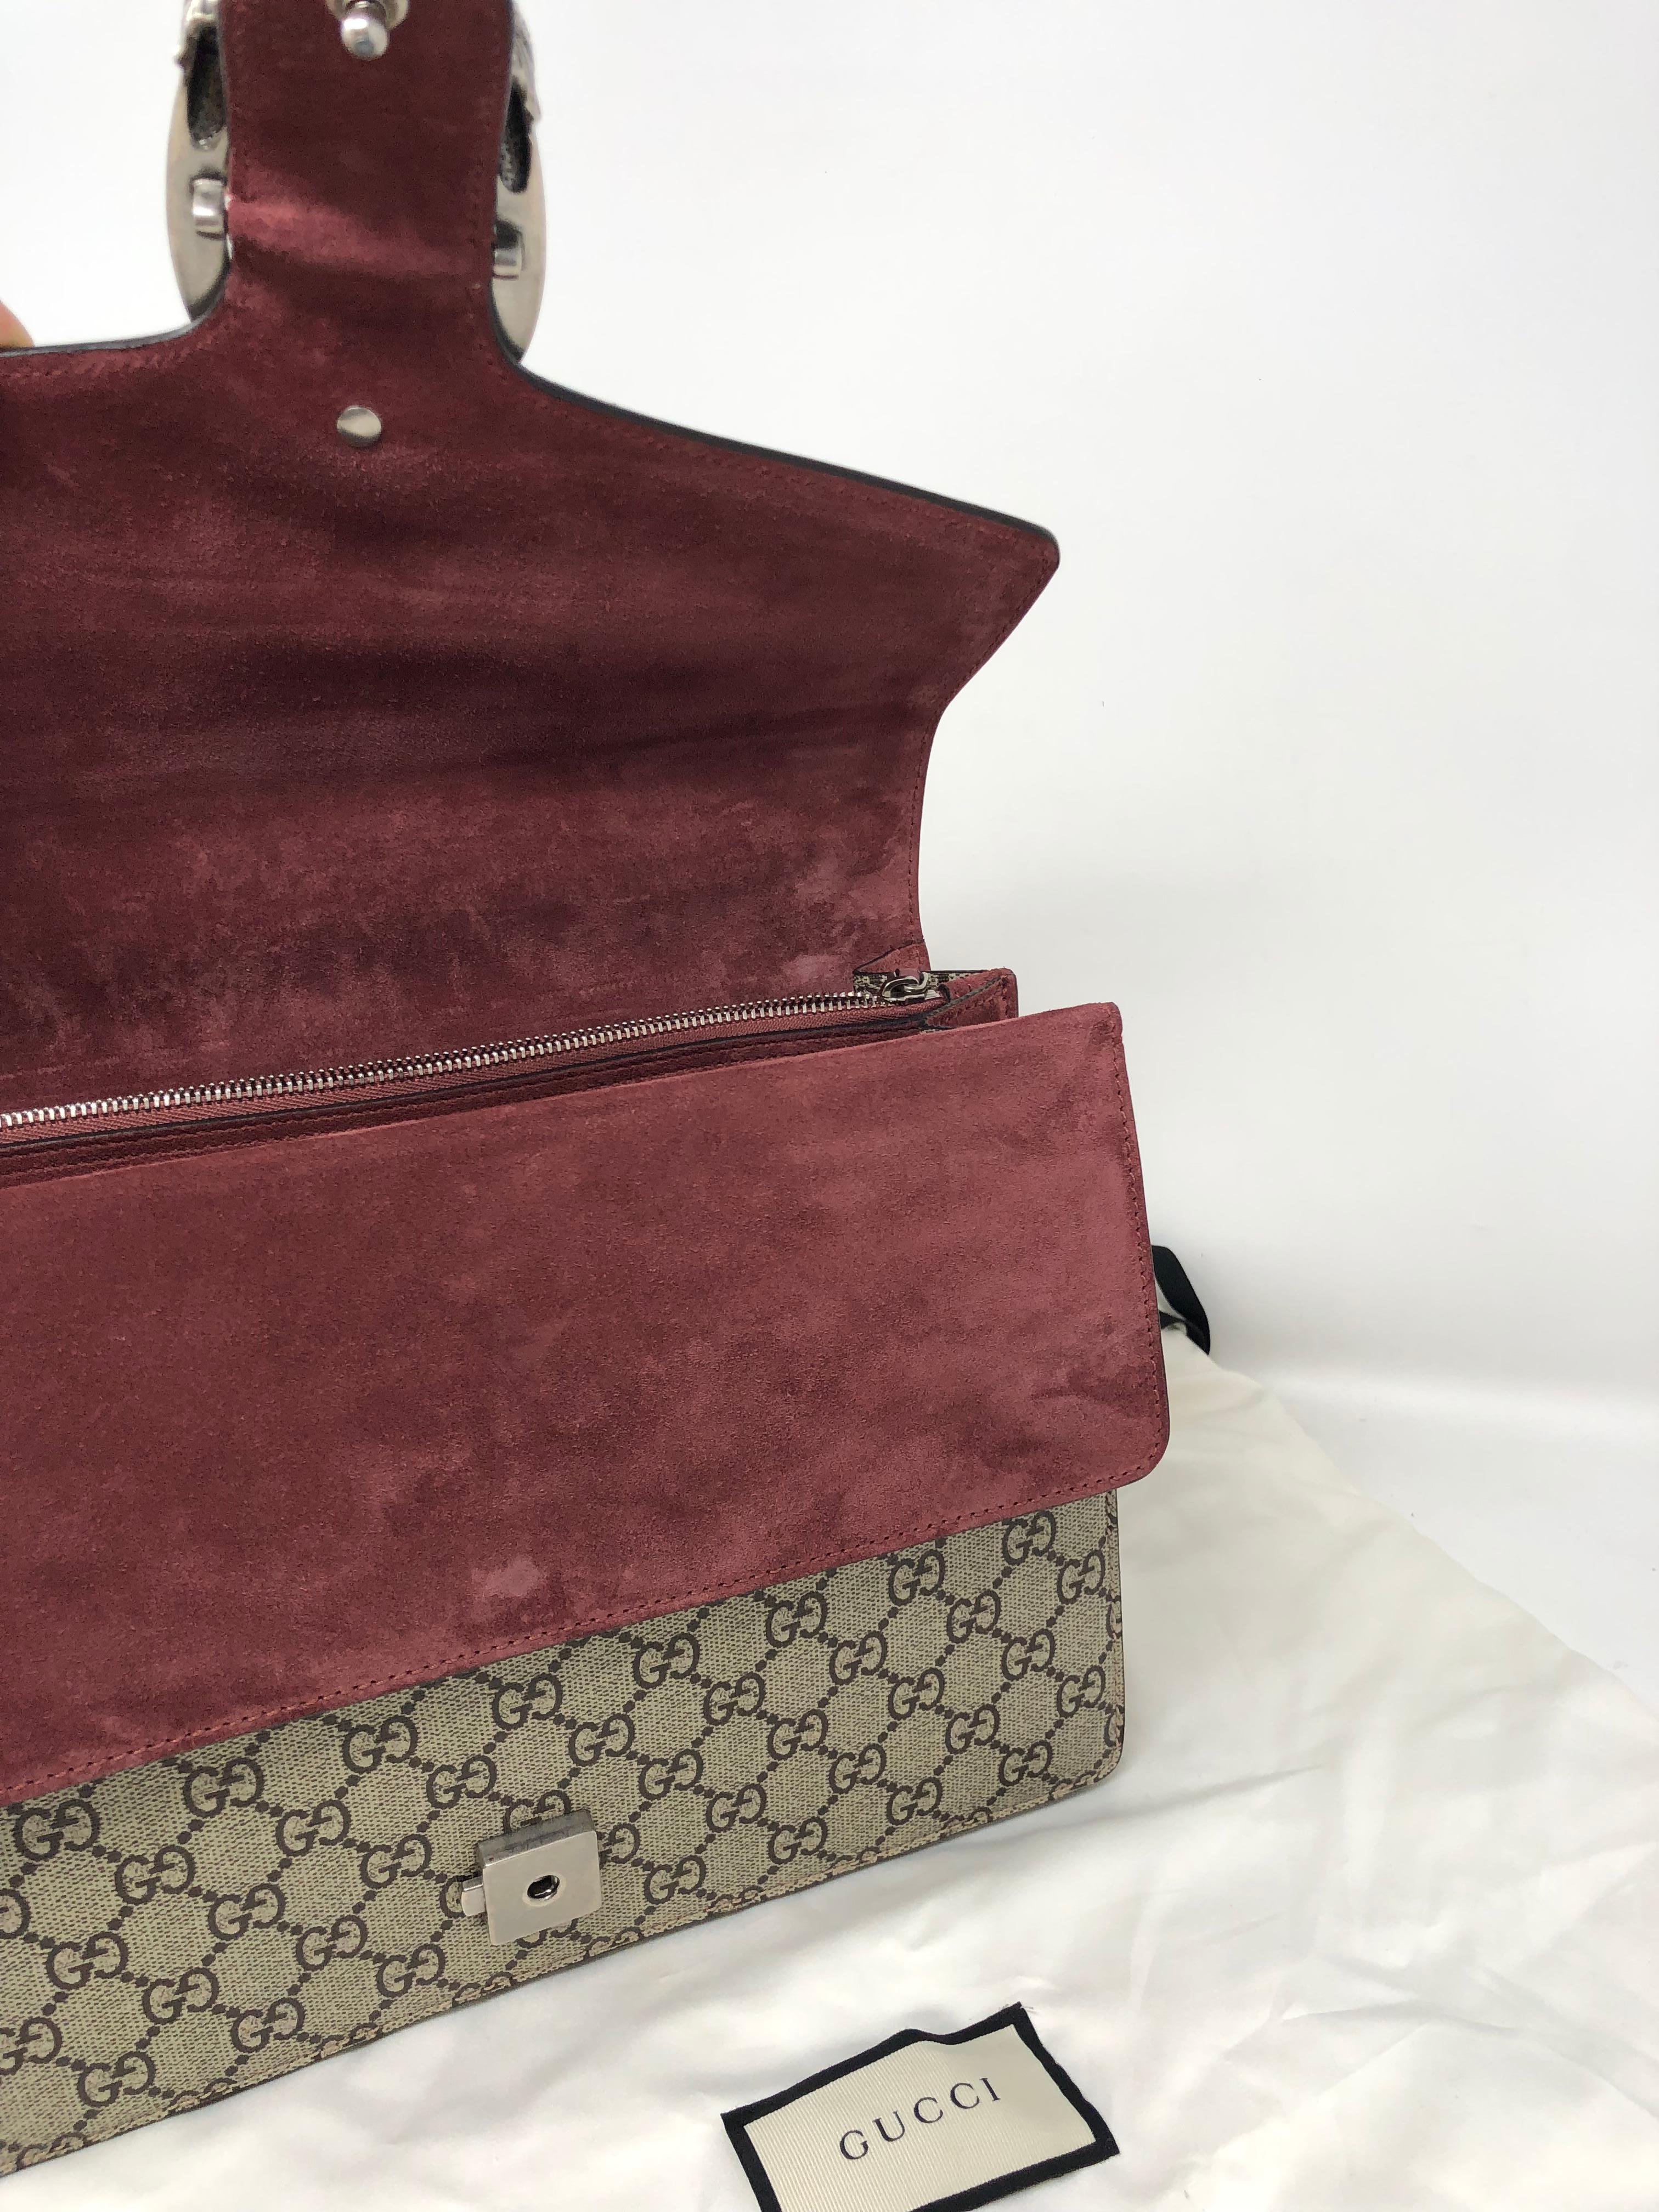 Gucci Dionysus Bag 3